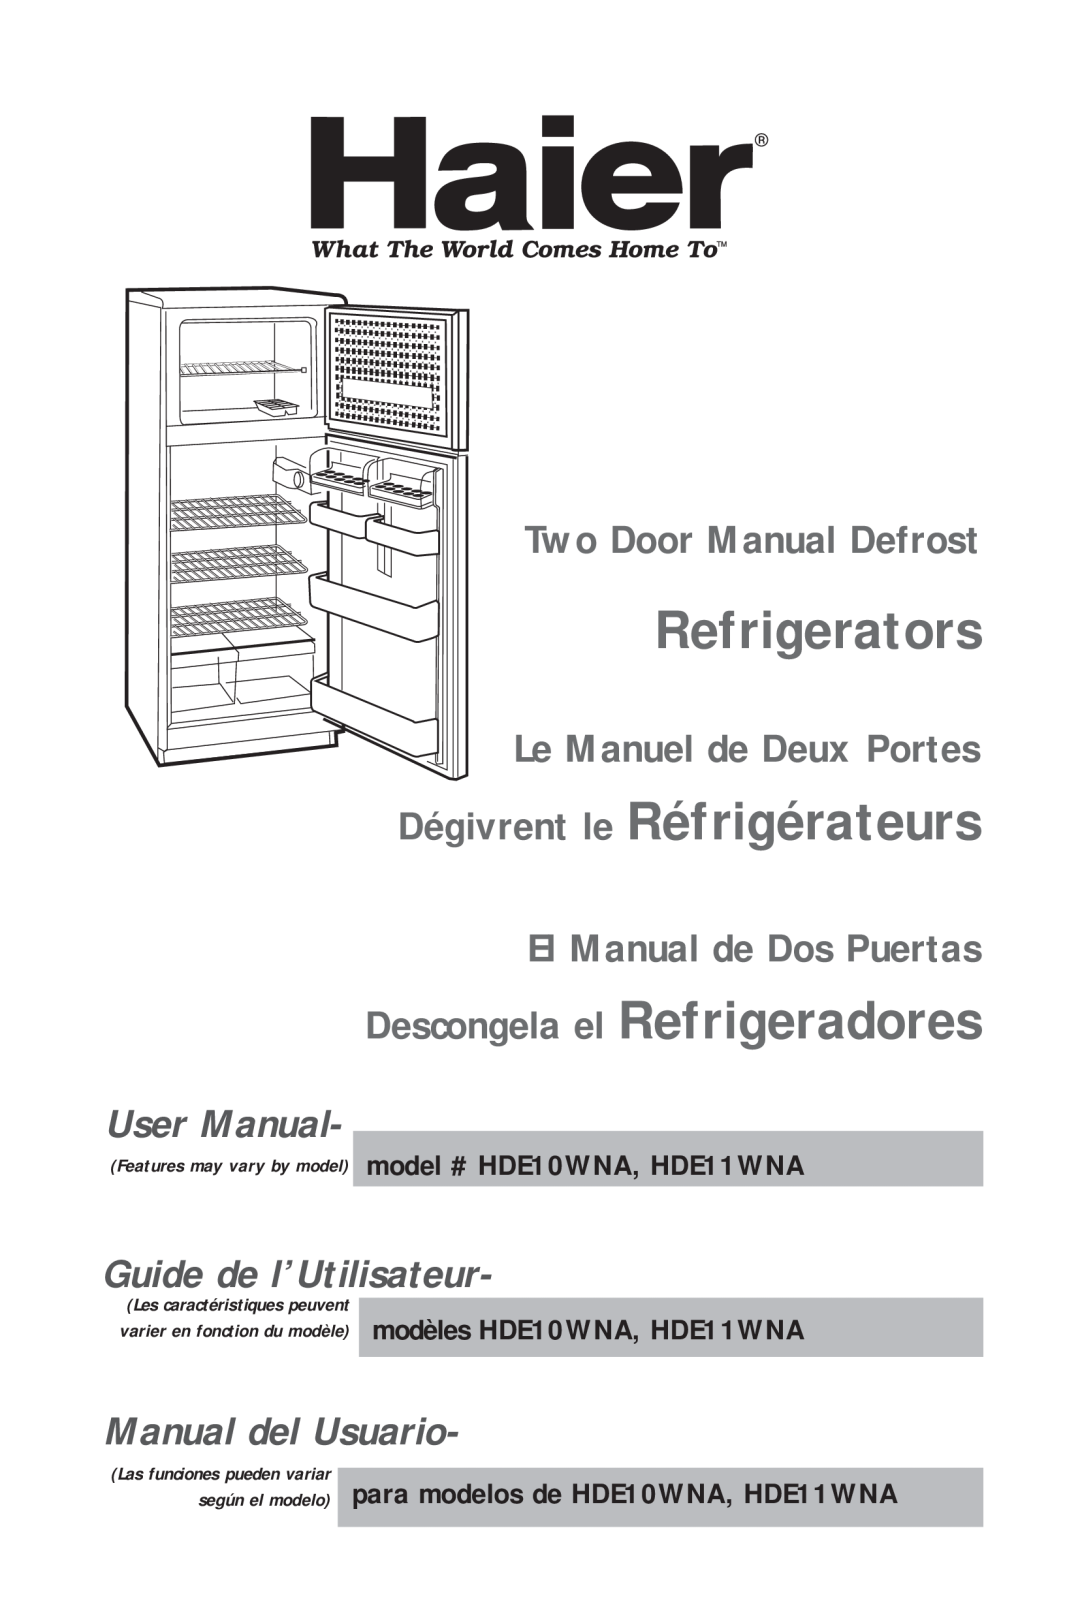 Haier HDE11WNA user manual Refrigerators, Dégivrent le Réfrigérateurs, Guide de l’Utilisateur, Manual del Usuario 